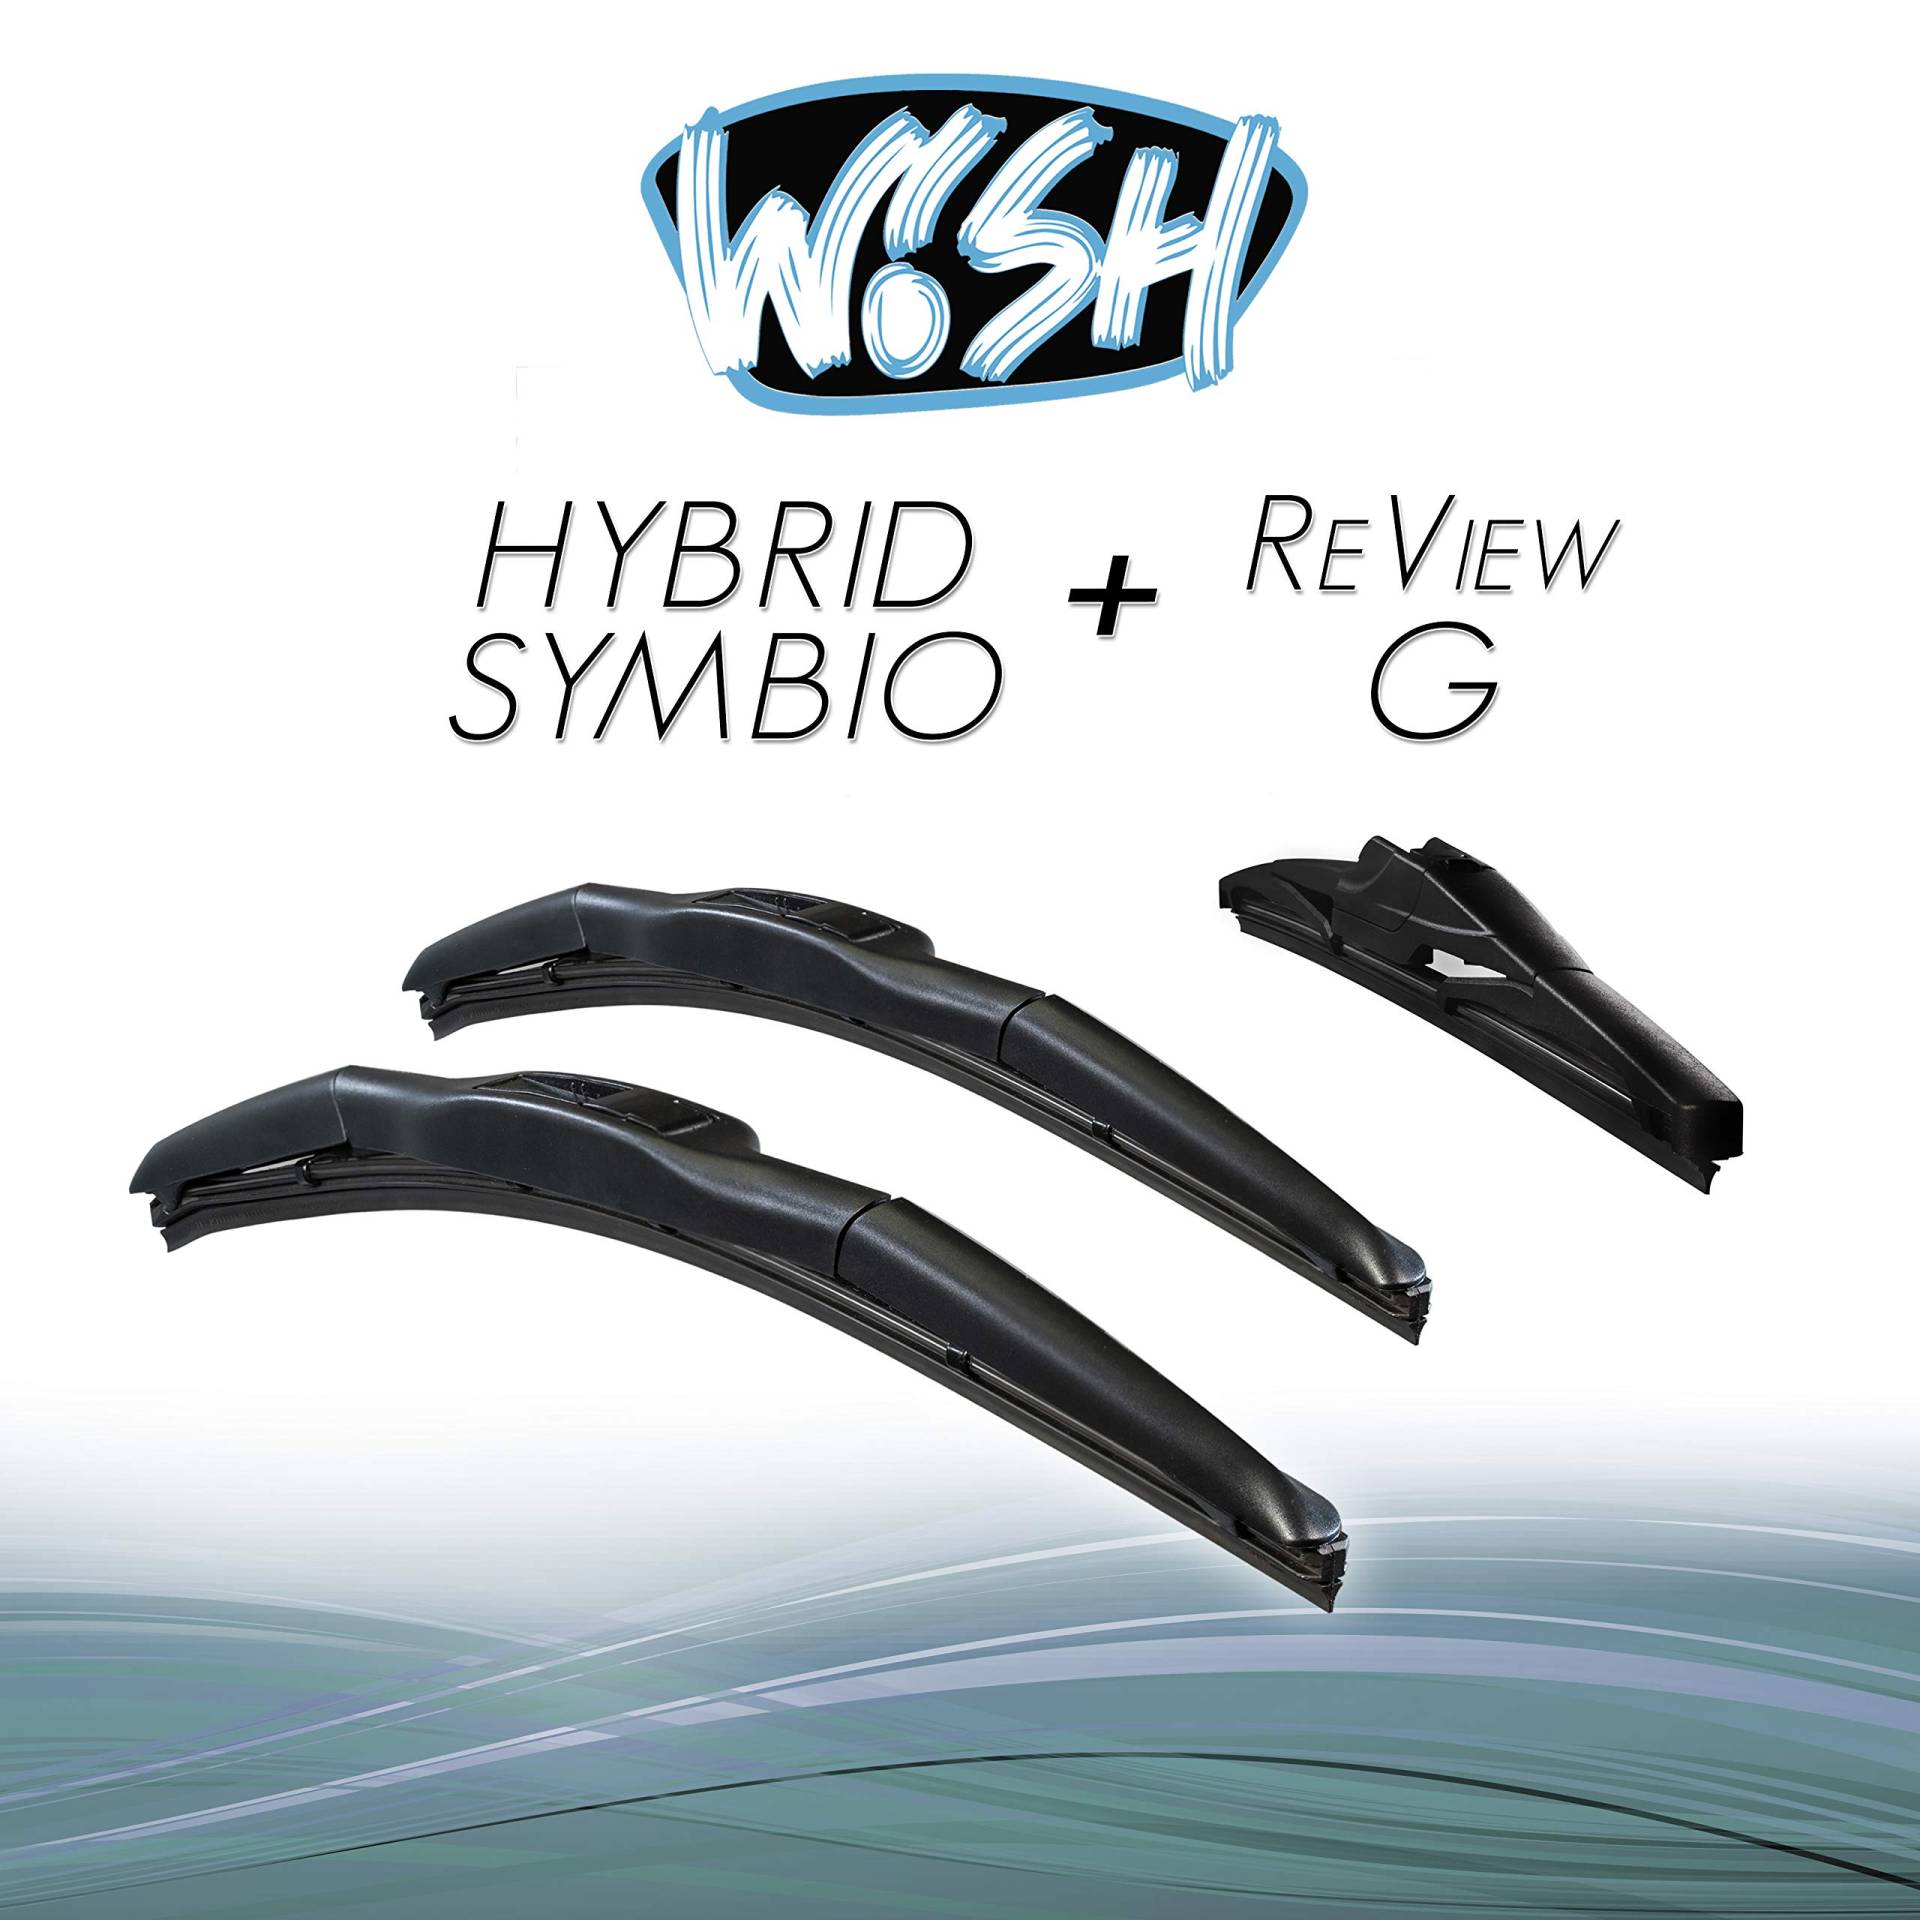 Wish® Hybrid Symbio Satz Front + Heck Scheibenwischer Länge: 26" 650mm / 16" 400mm / 14" 350mm Wischblätter Vorne und Hinten Hybrid-Scheibenwischer + Review G HS26.16.RG14 von Wish